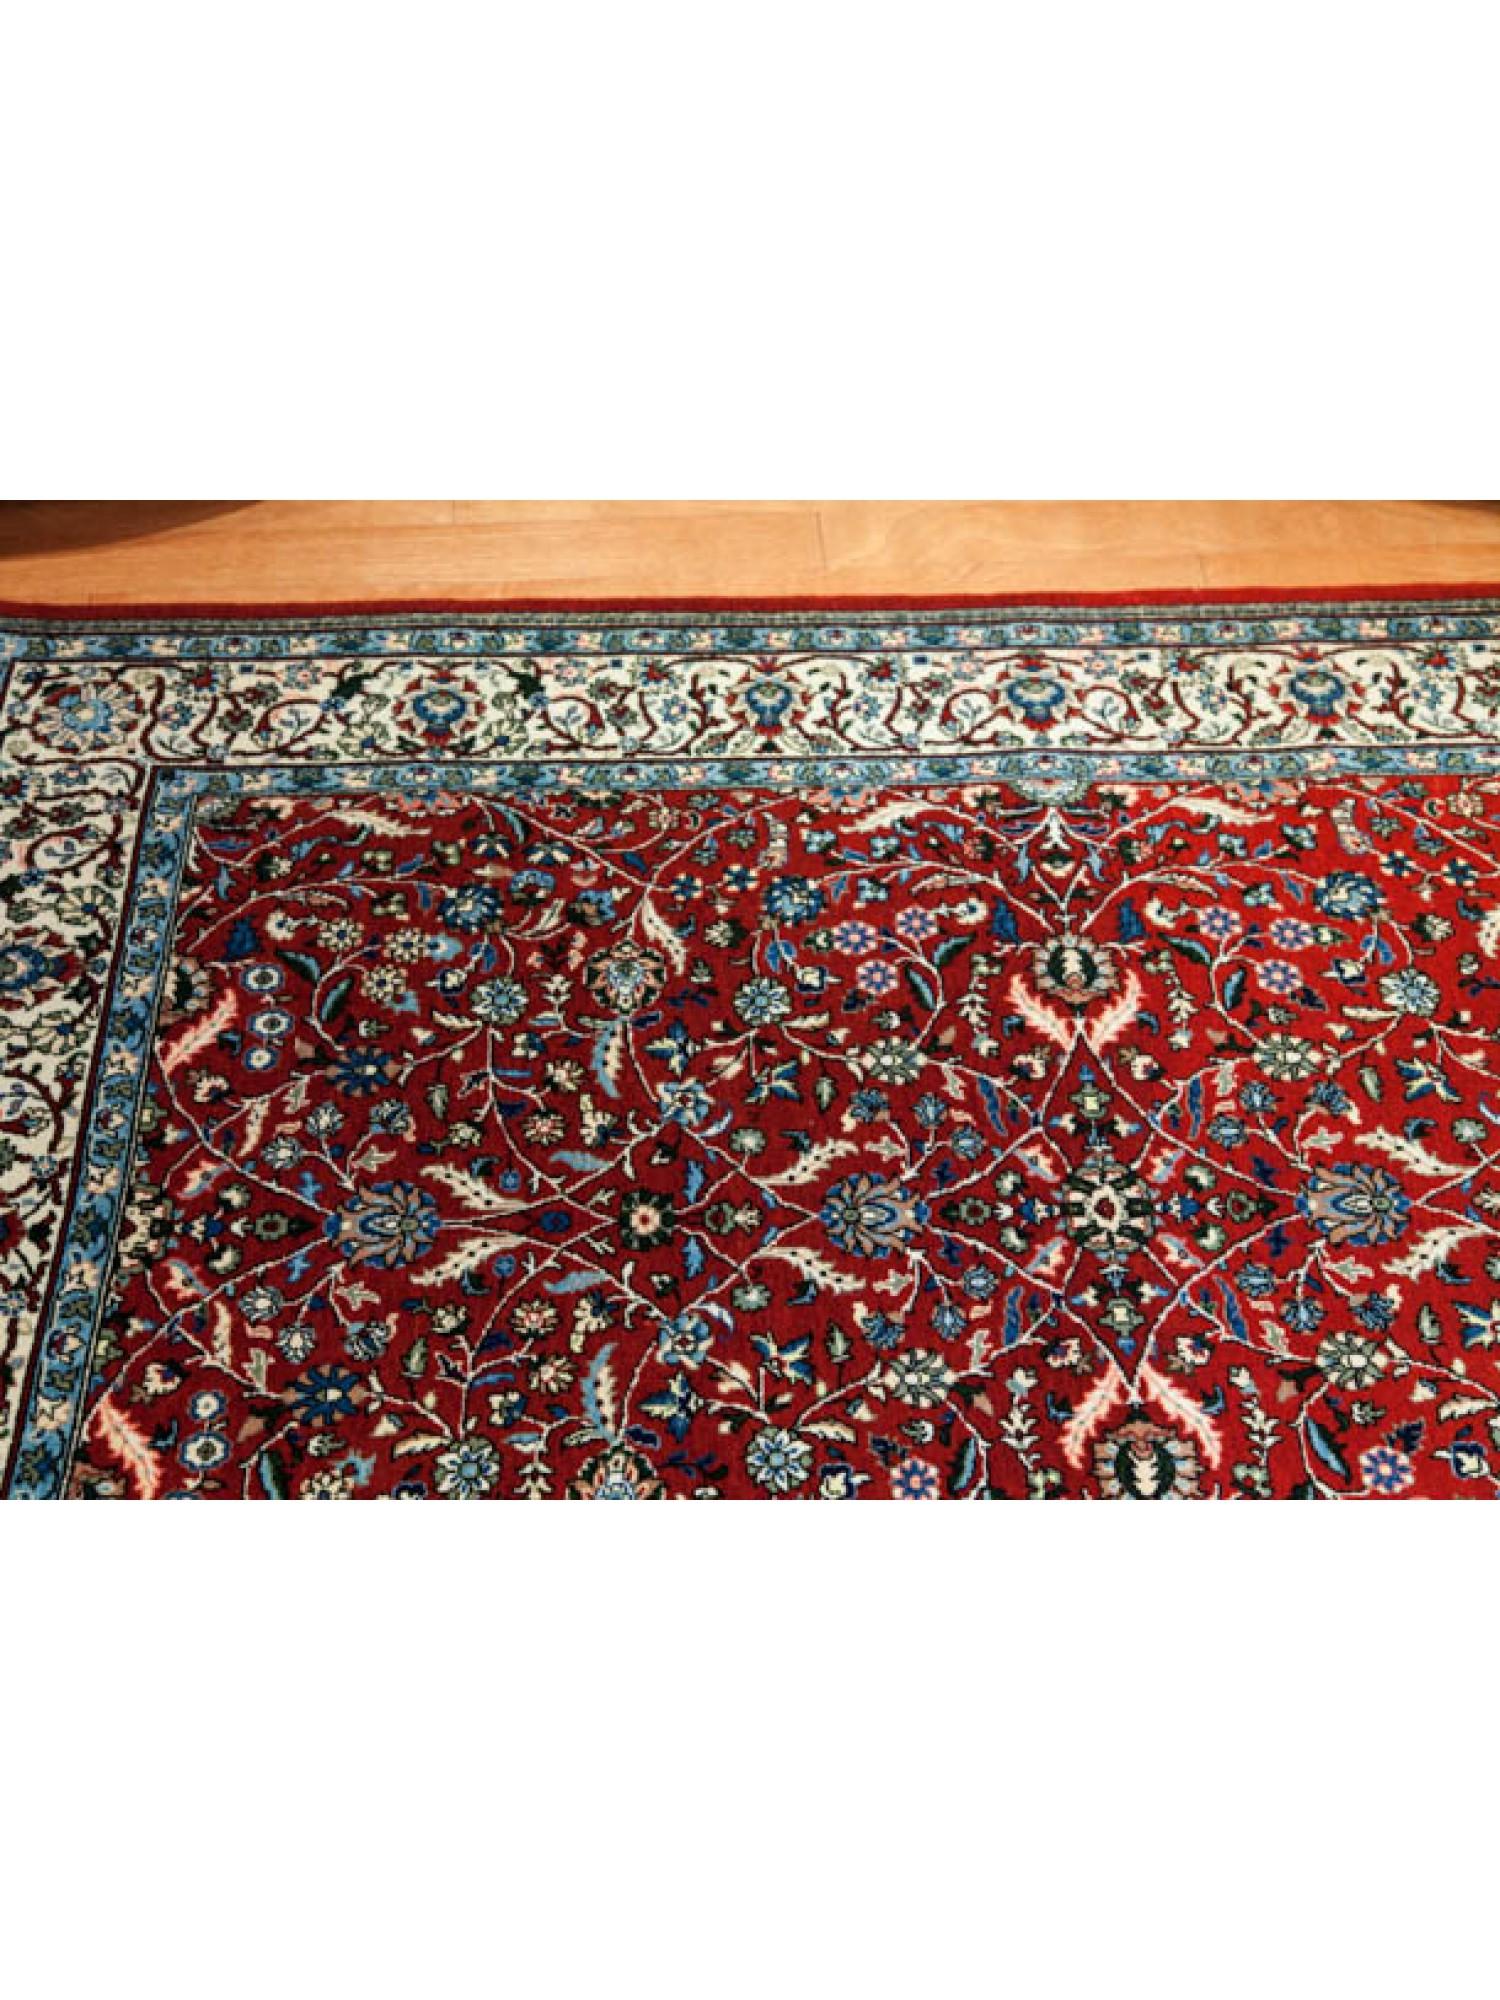 Hereke Wool & Cotton Carpet, Turkish Anatolian Rug 2